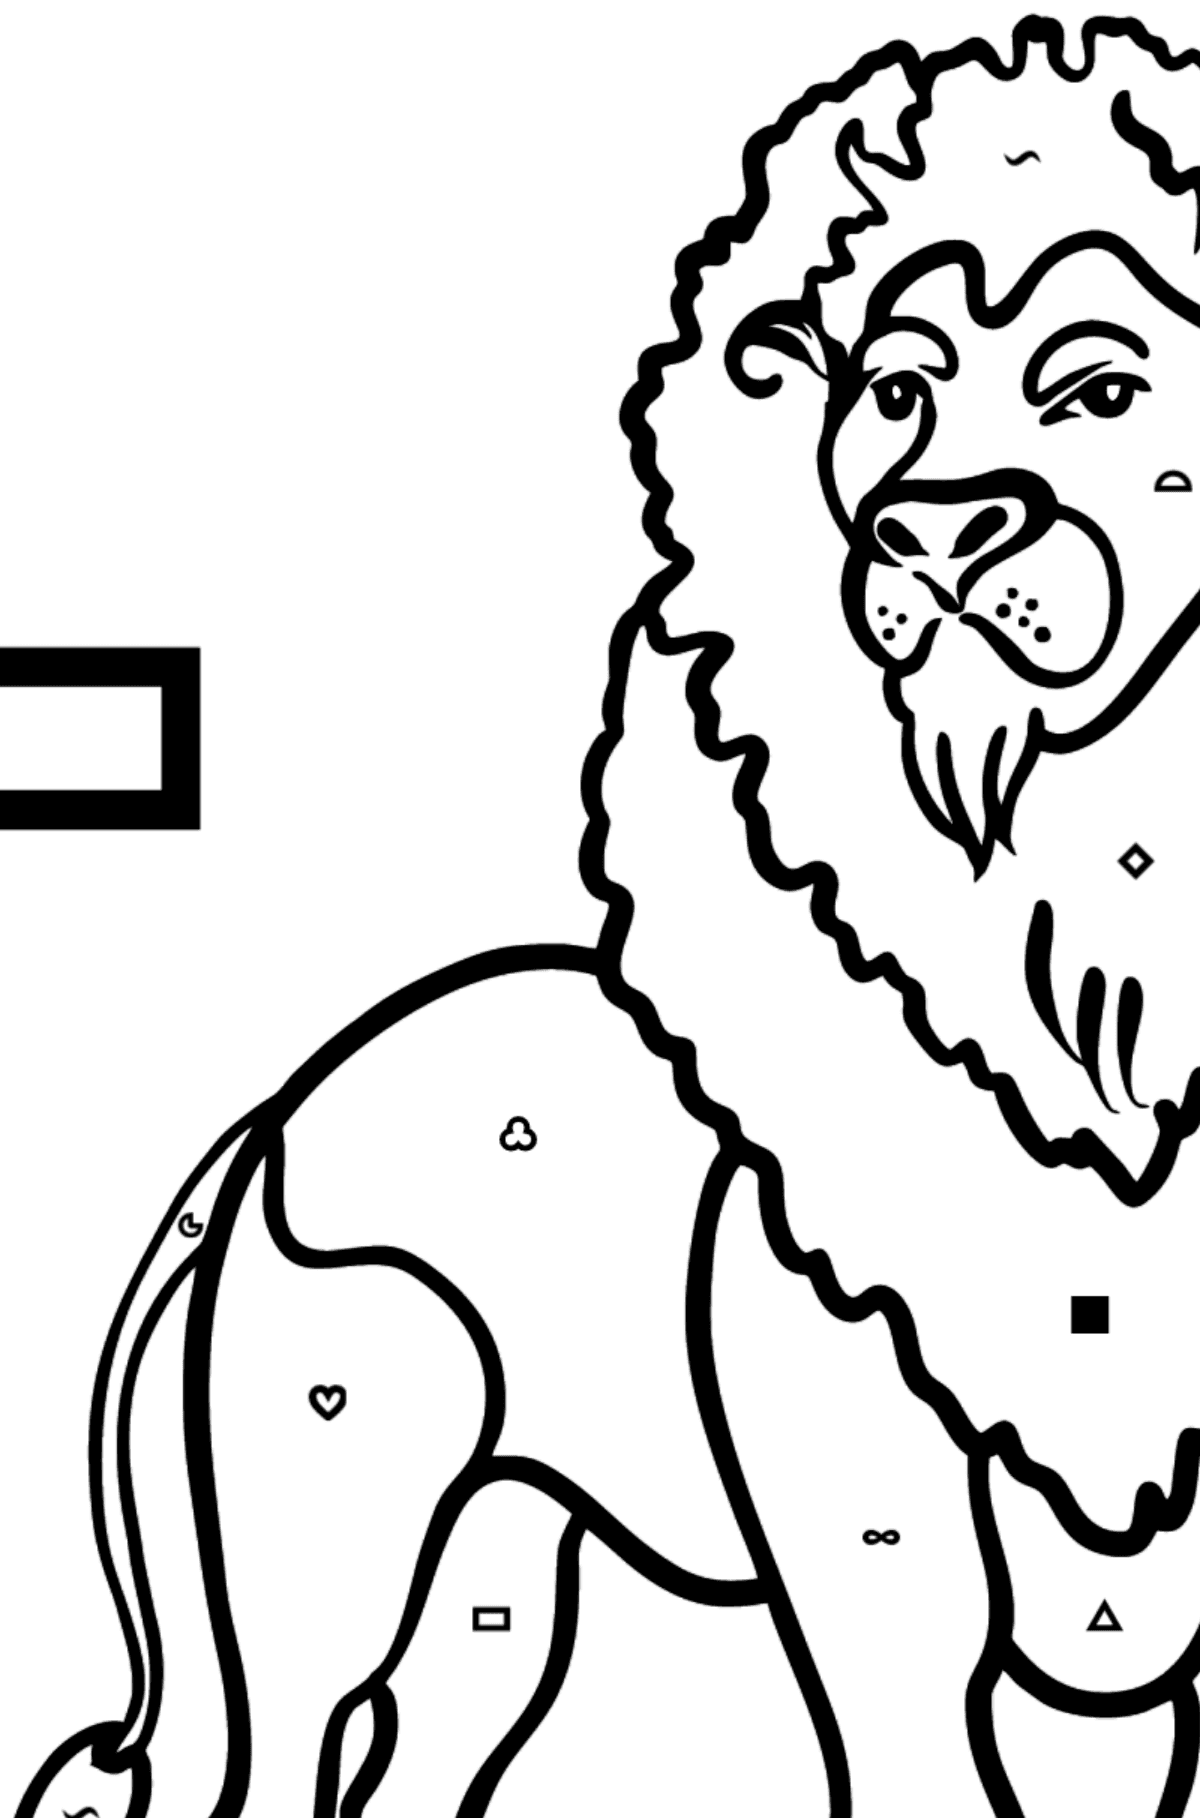 Dibujo de Letra L inglesa para colorear - LION - Colorear por Símbolos para Niños